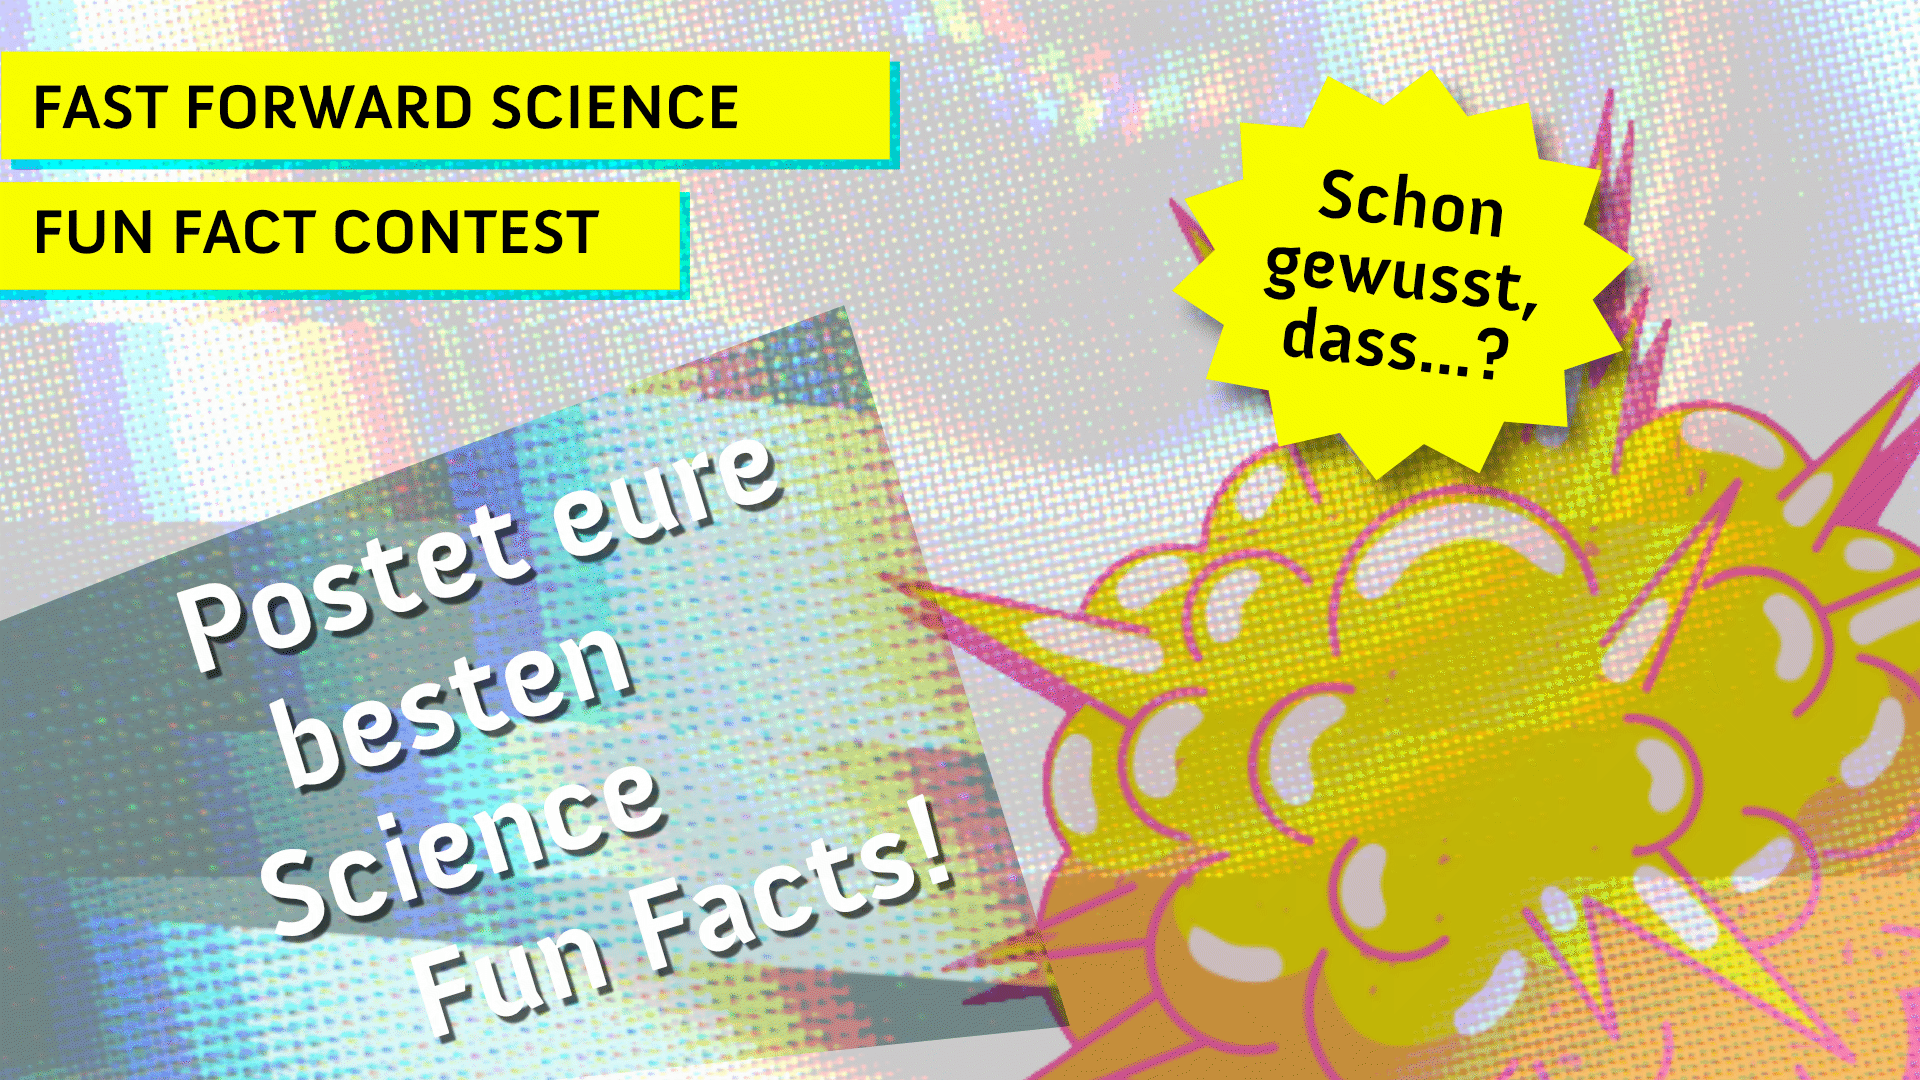 ++ Gewinnspiel ++ Schon gewusst, dass…? Der FFSci Fun Fact Contest